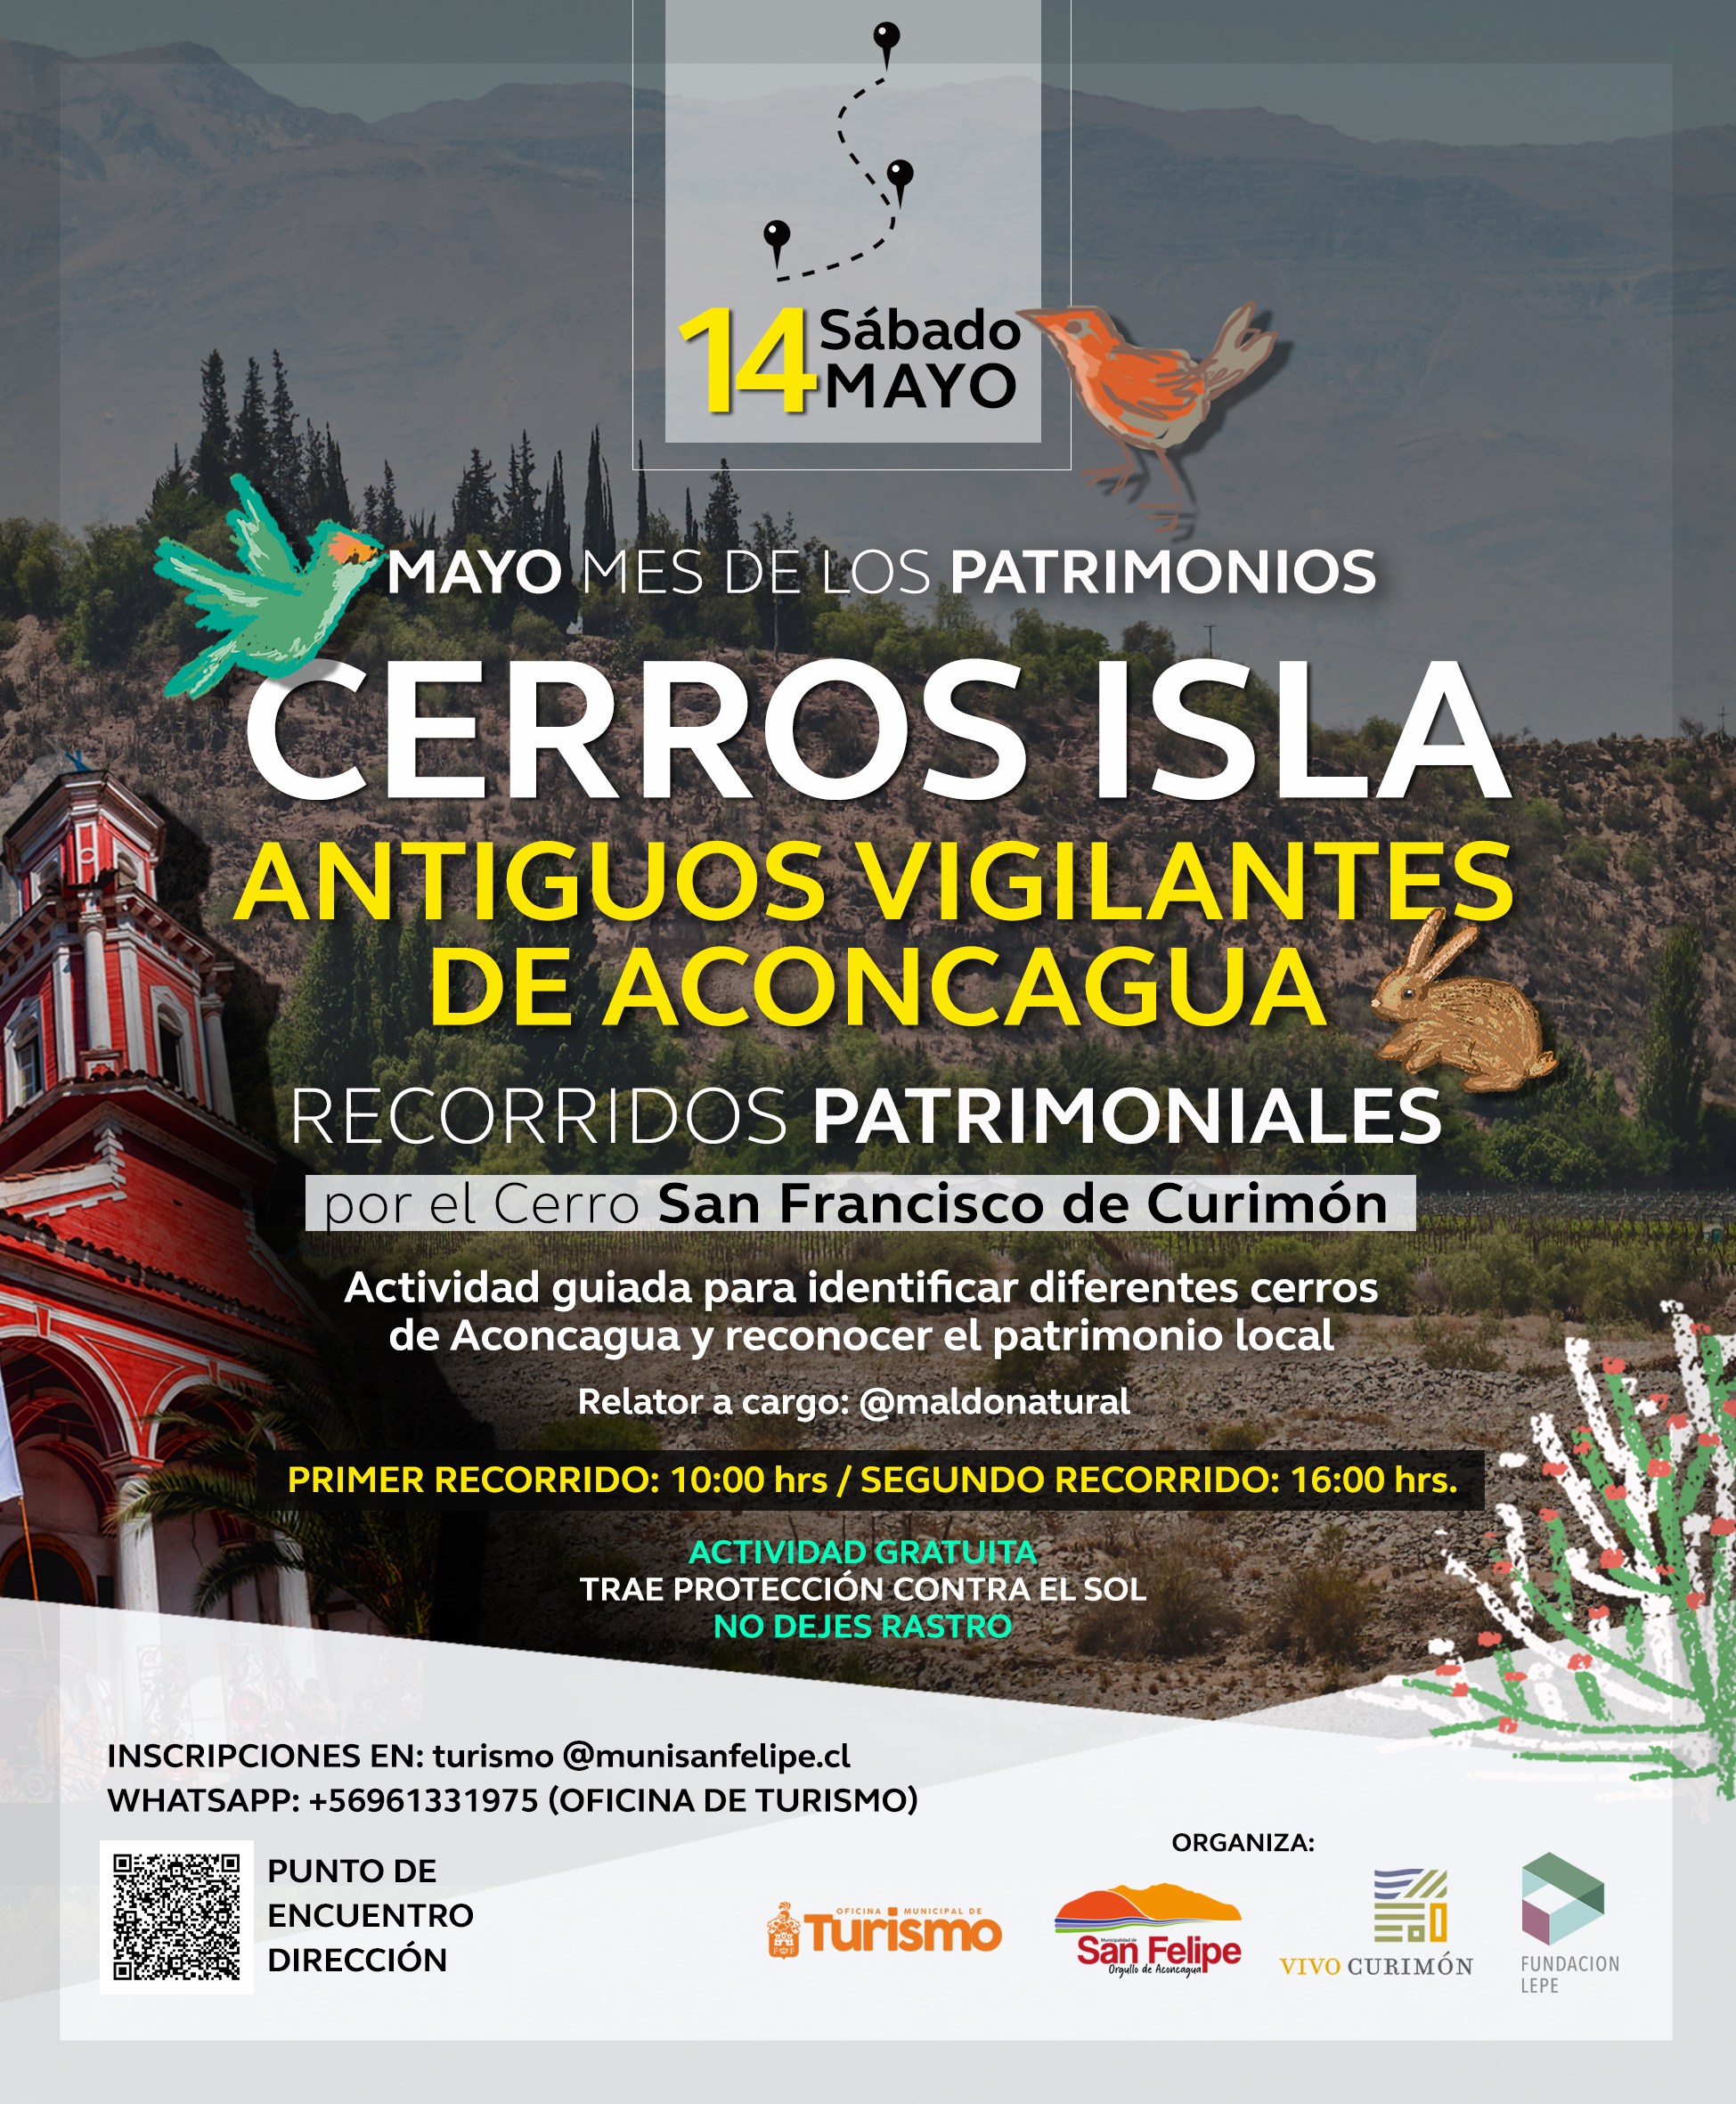 CURIMÓN: El Valle del Aconcagua comienza a celebrar el Día del Patrimonio con la actividad «Cerros isla de Aconcagua: antiguos vigilantes»